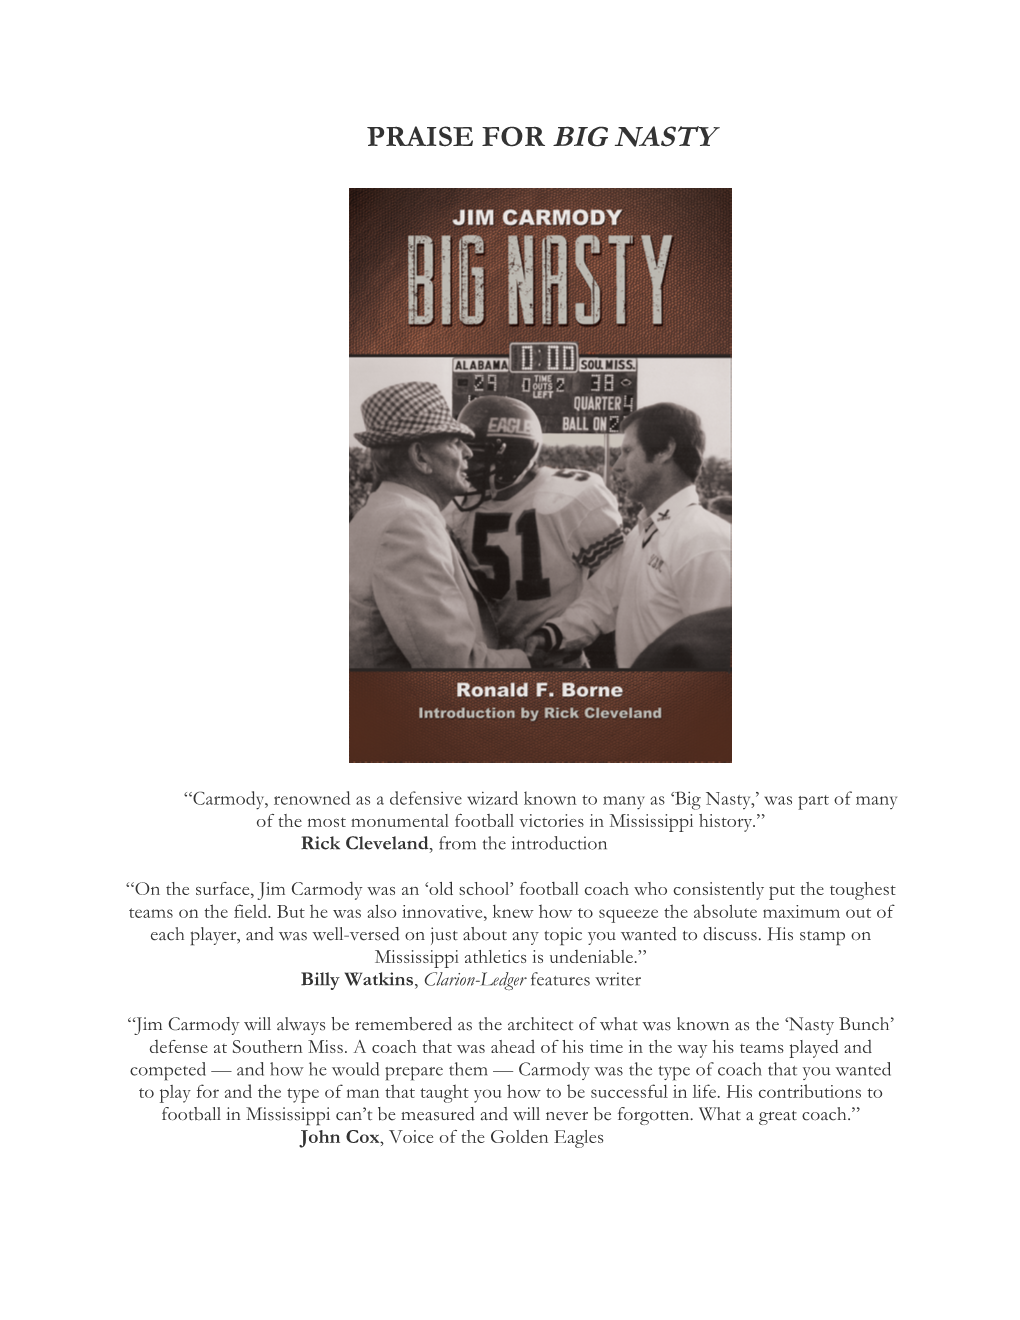 Jim Carmody, Big Nasty by Ron Borne